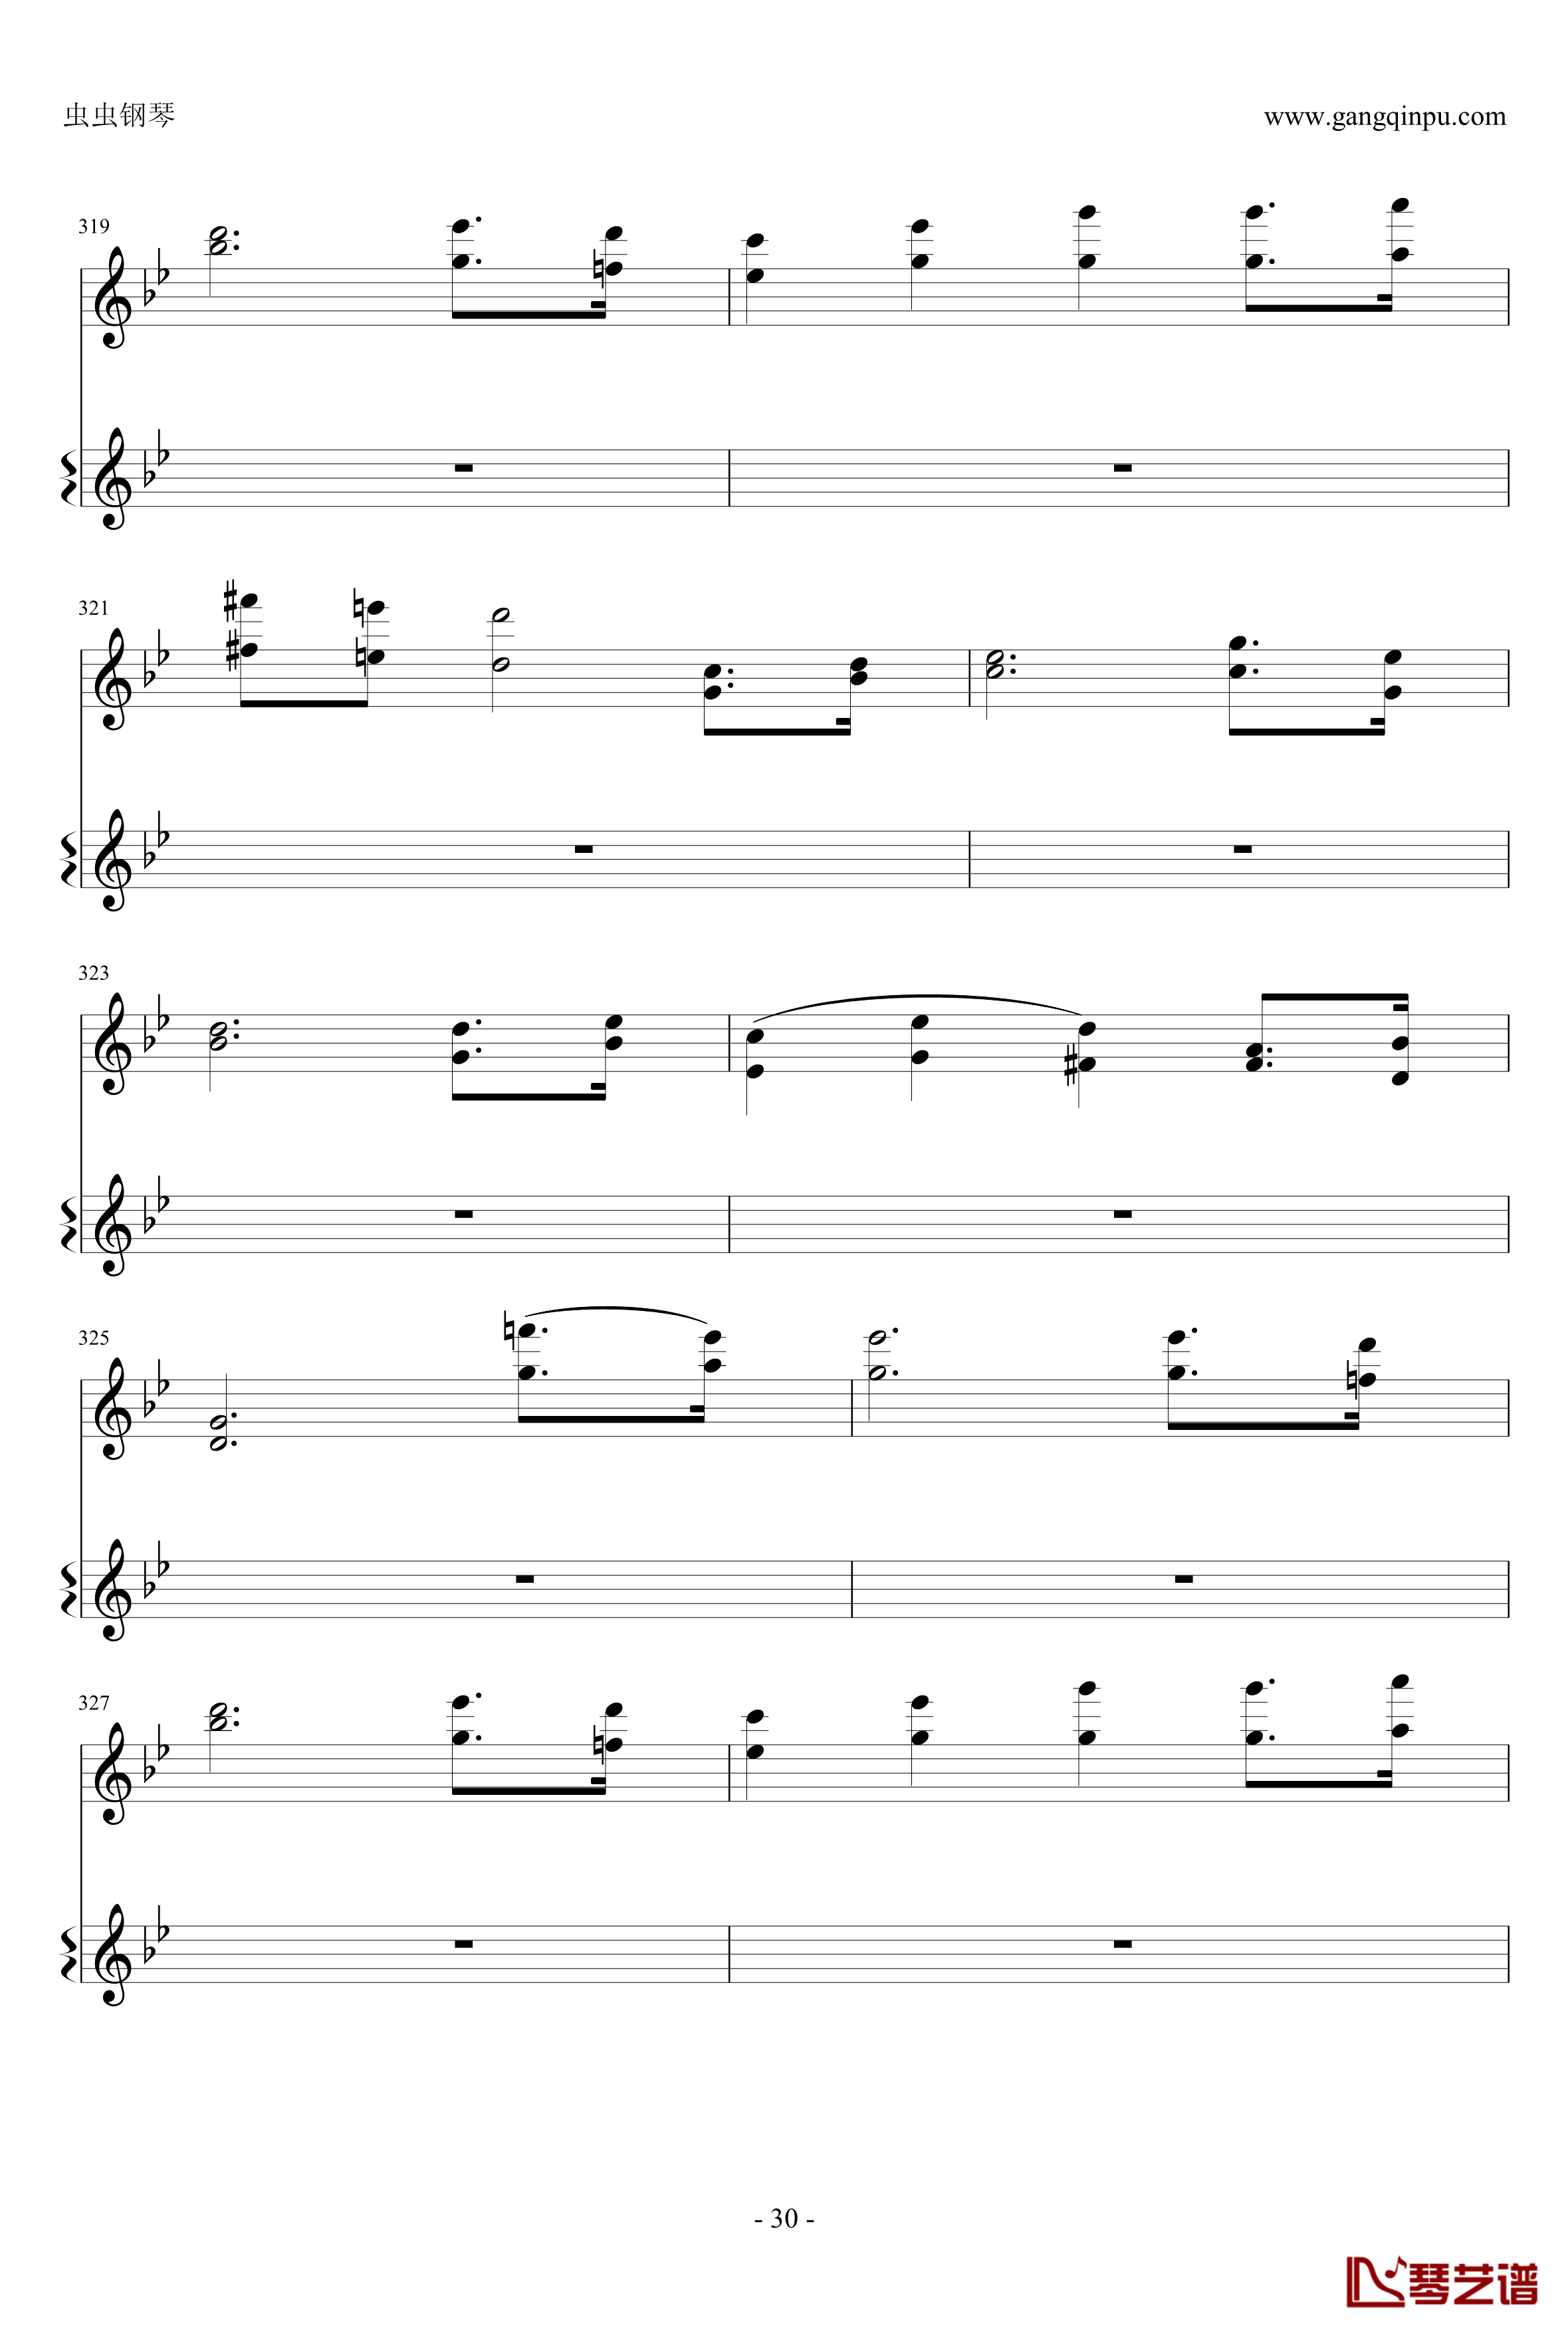 意大利国歌钢琴谱-变奏曲修改版-DXF30